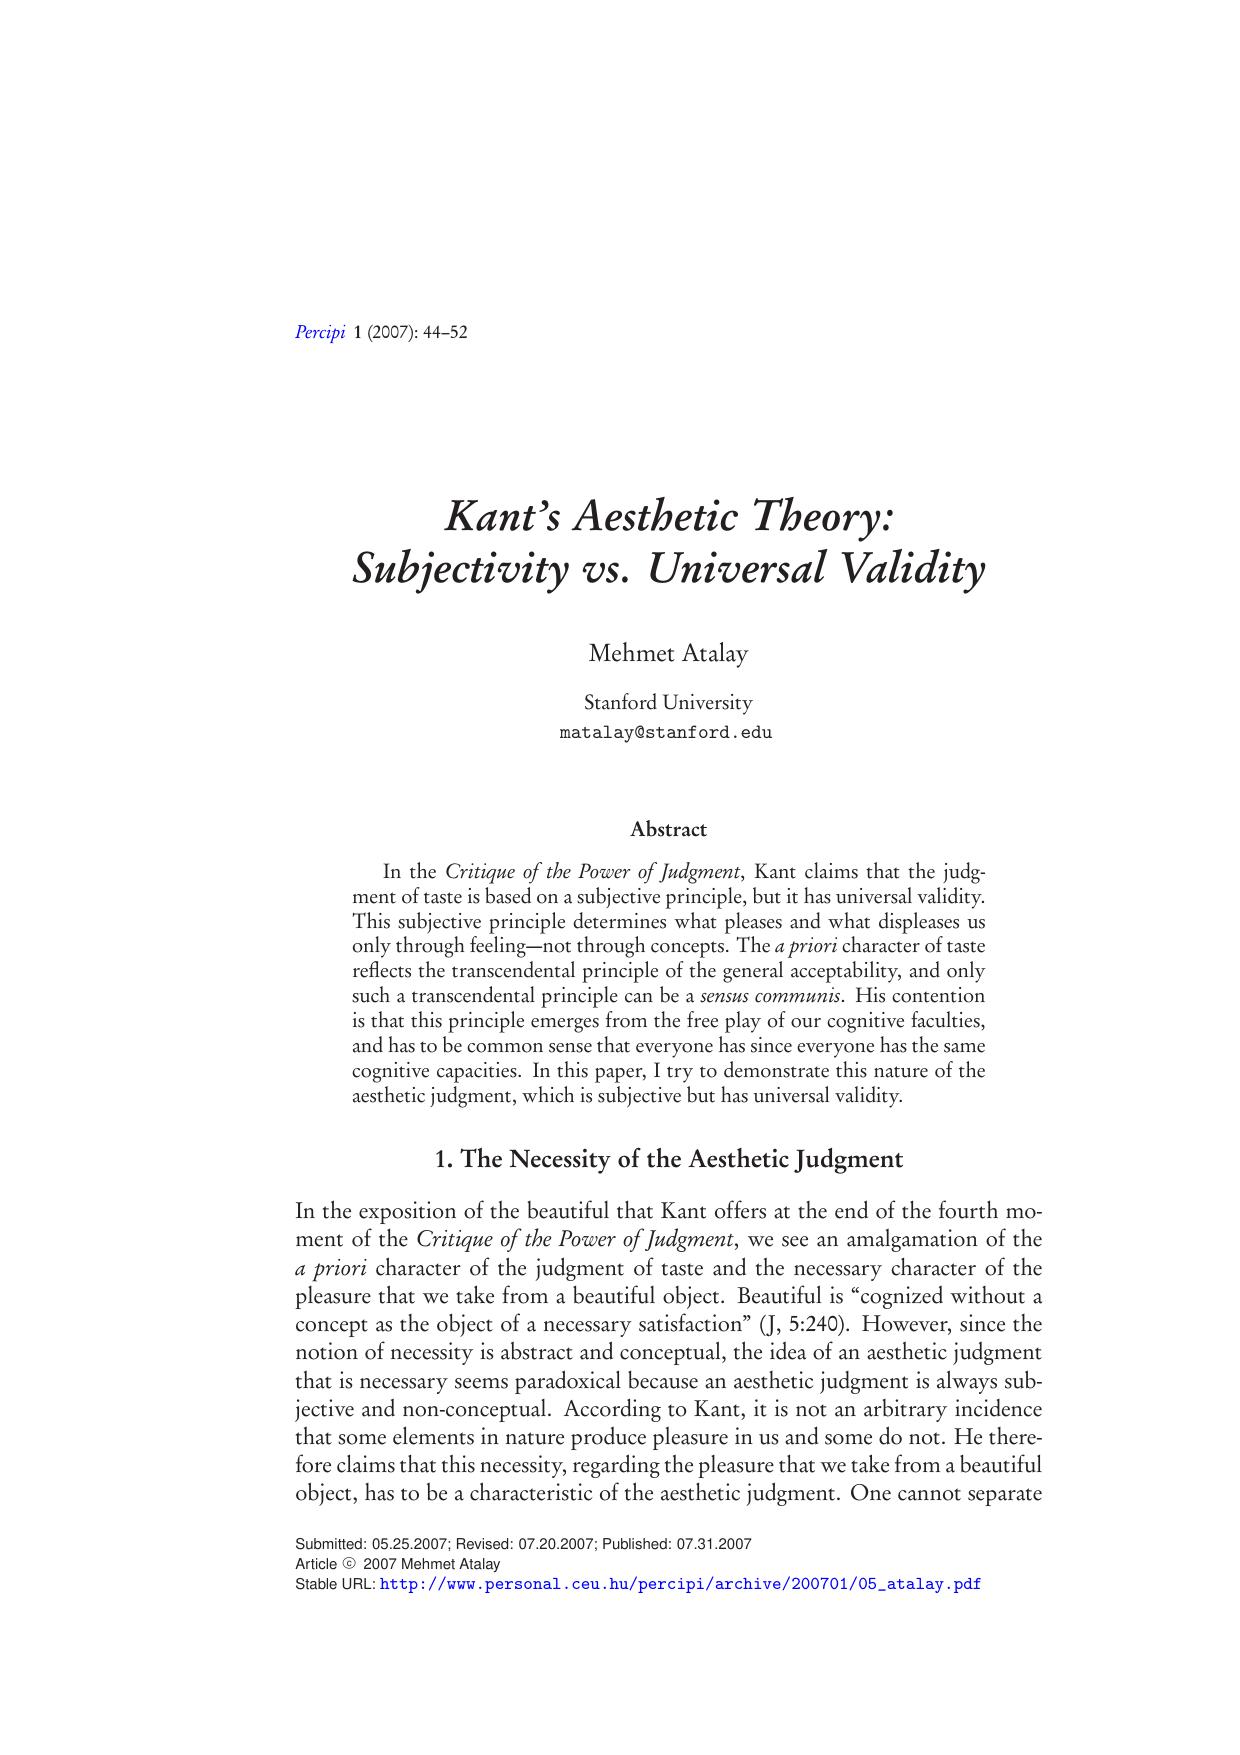 Kant's Aesthetic Theory: Subjectivity vs. Universal Validity